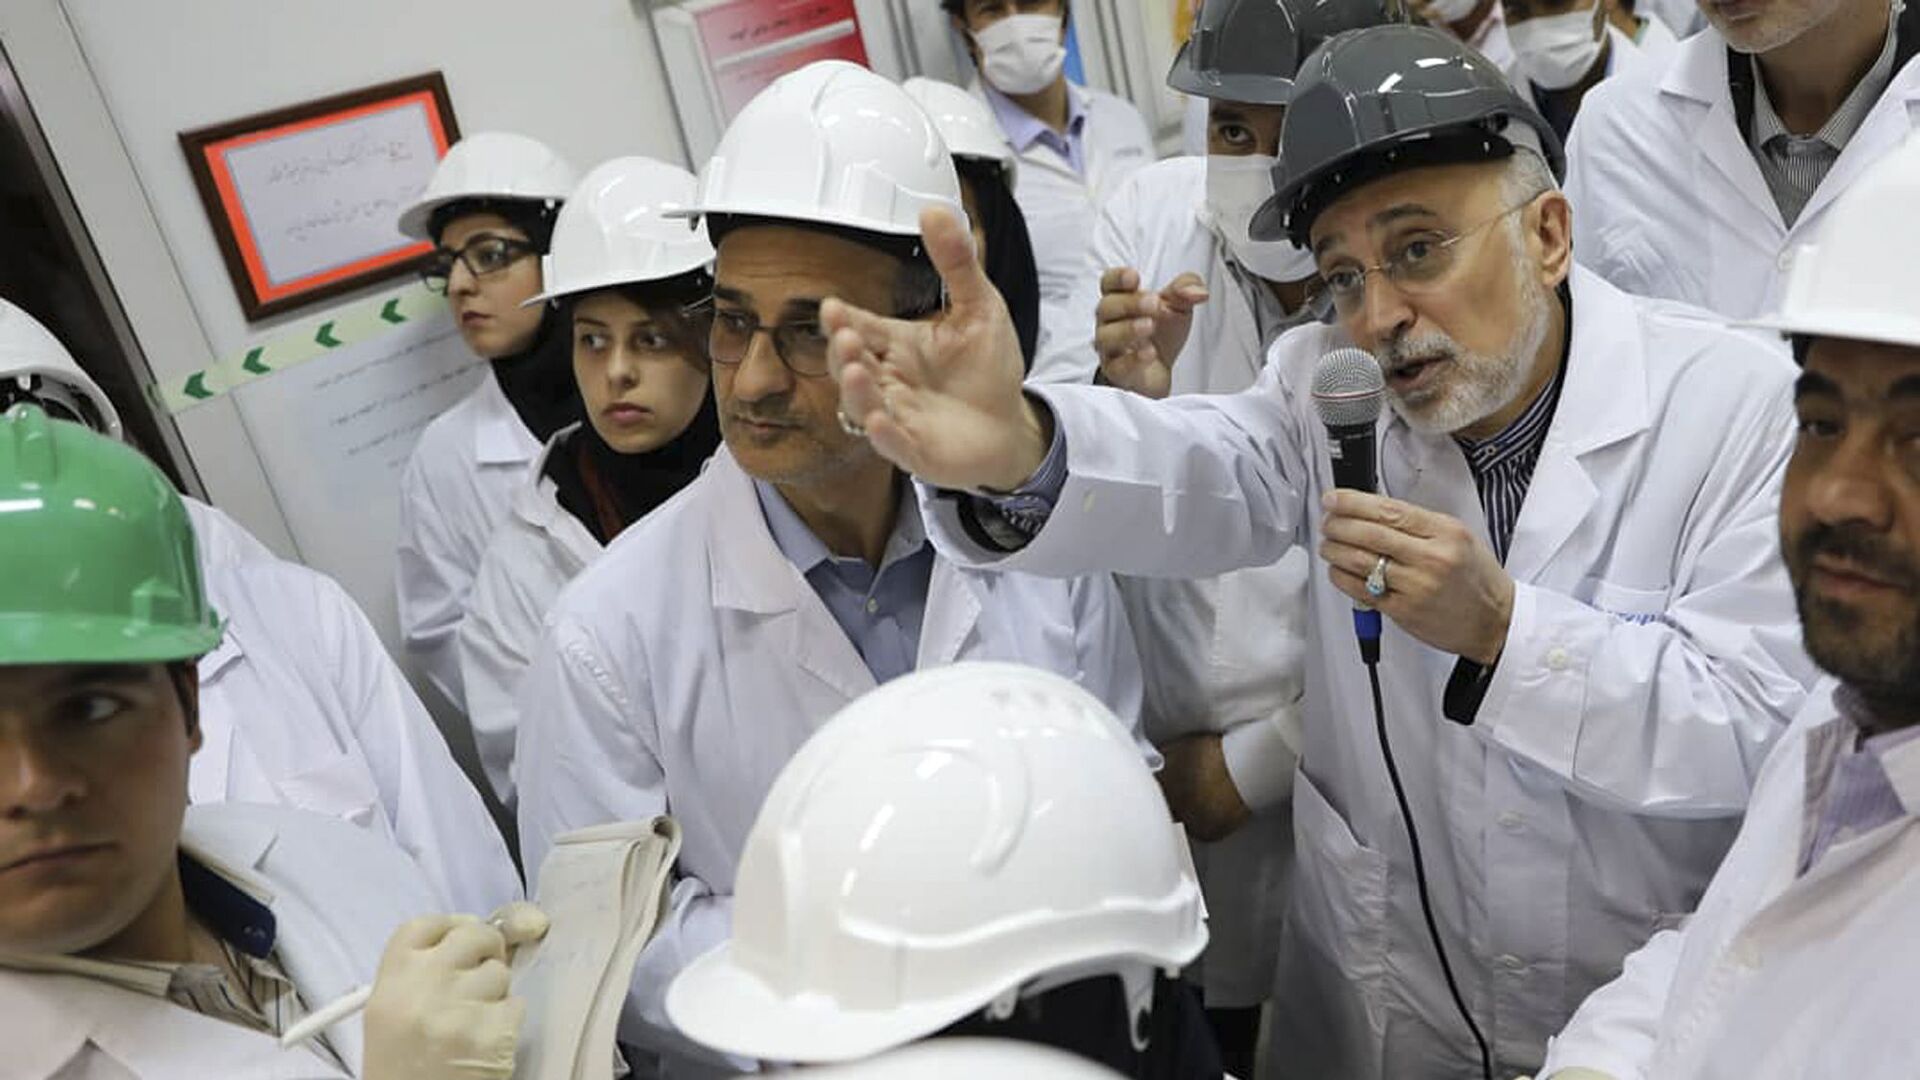 علي أكبر صالحي رئيس منظمة الطاقة النووية الإيرانية يتحدث مع وسائل الإعلام أثناء زيارته لمرفق تخصيب نطنز وسط إيران - سبوتنيك عربي, 1920, 14.09.2021